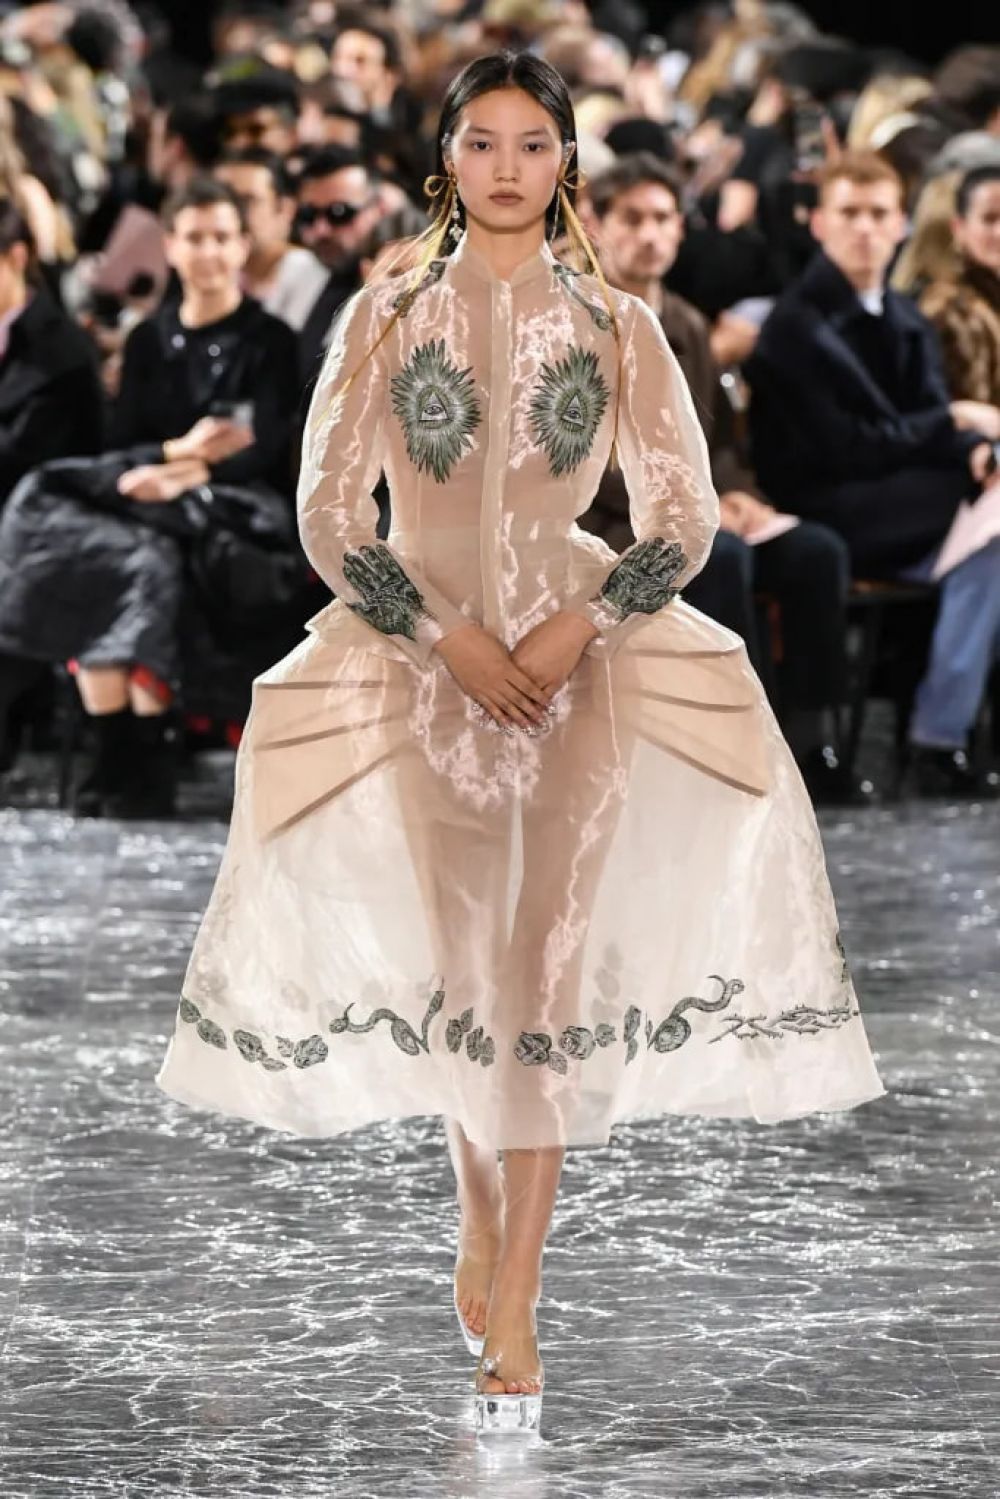 Дом Jean Paul Gaultier в своей коллекции сделал акцент на полупрозрачных и невесомых платьях.